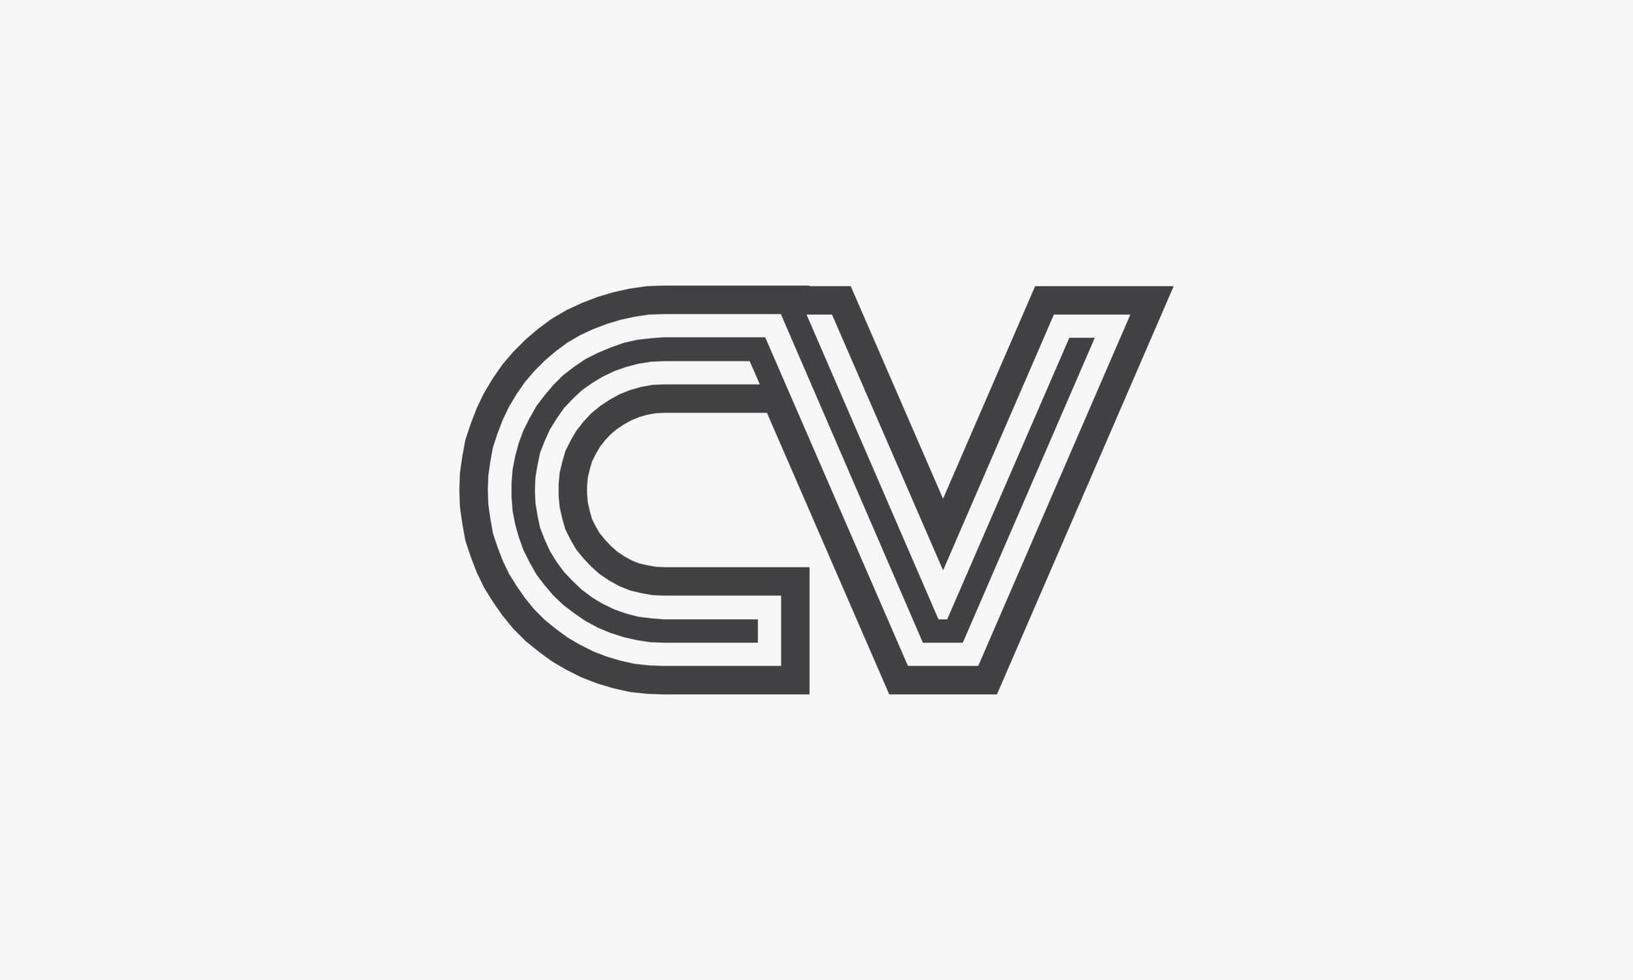 line letter CV logo isolated on white background. vector